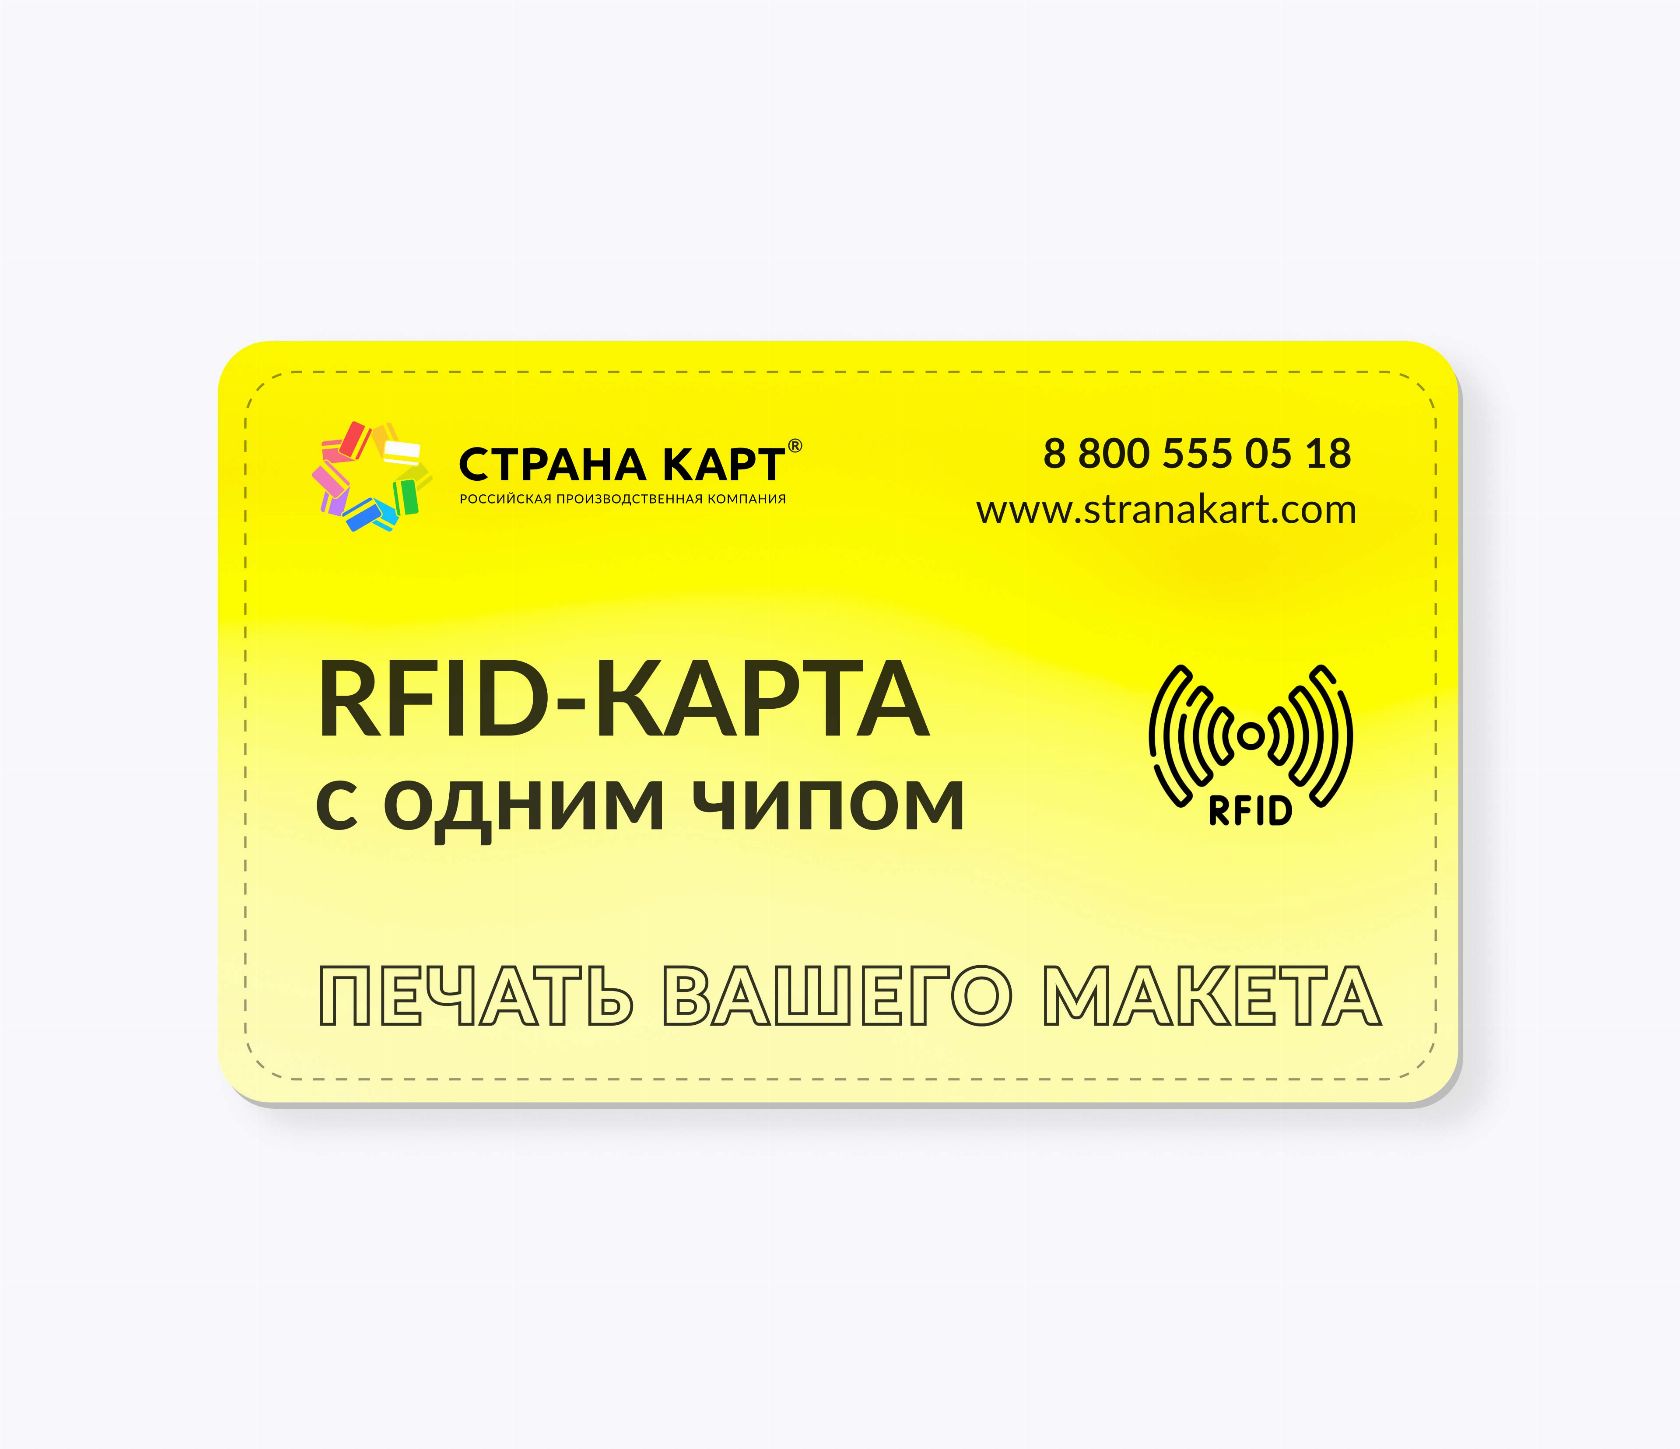 RFID-карты с чипом MIK1KMCM 7 byte nUID печать вашего макета RFID-карты с чипом MIK1KMCM 7 byte nUID